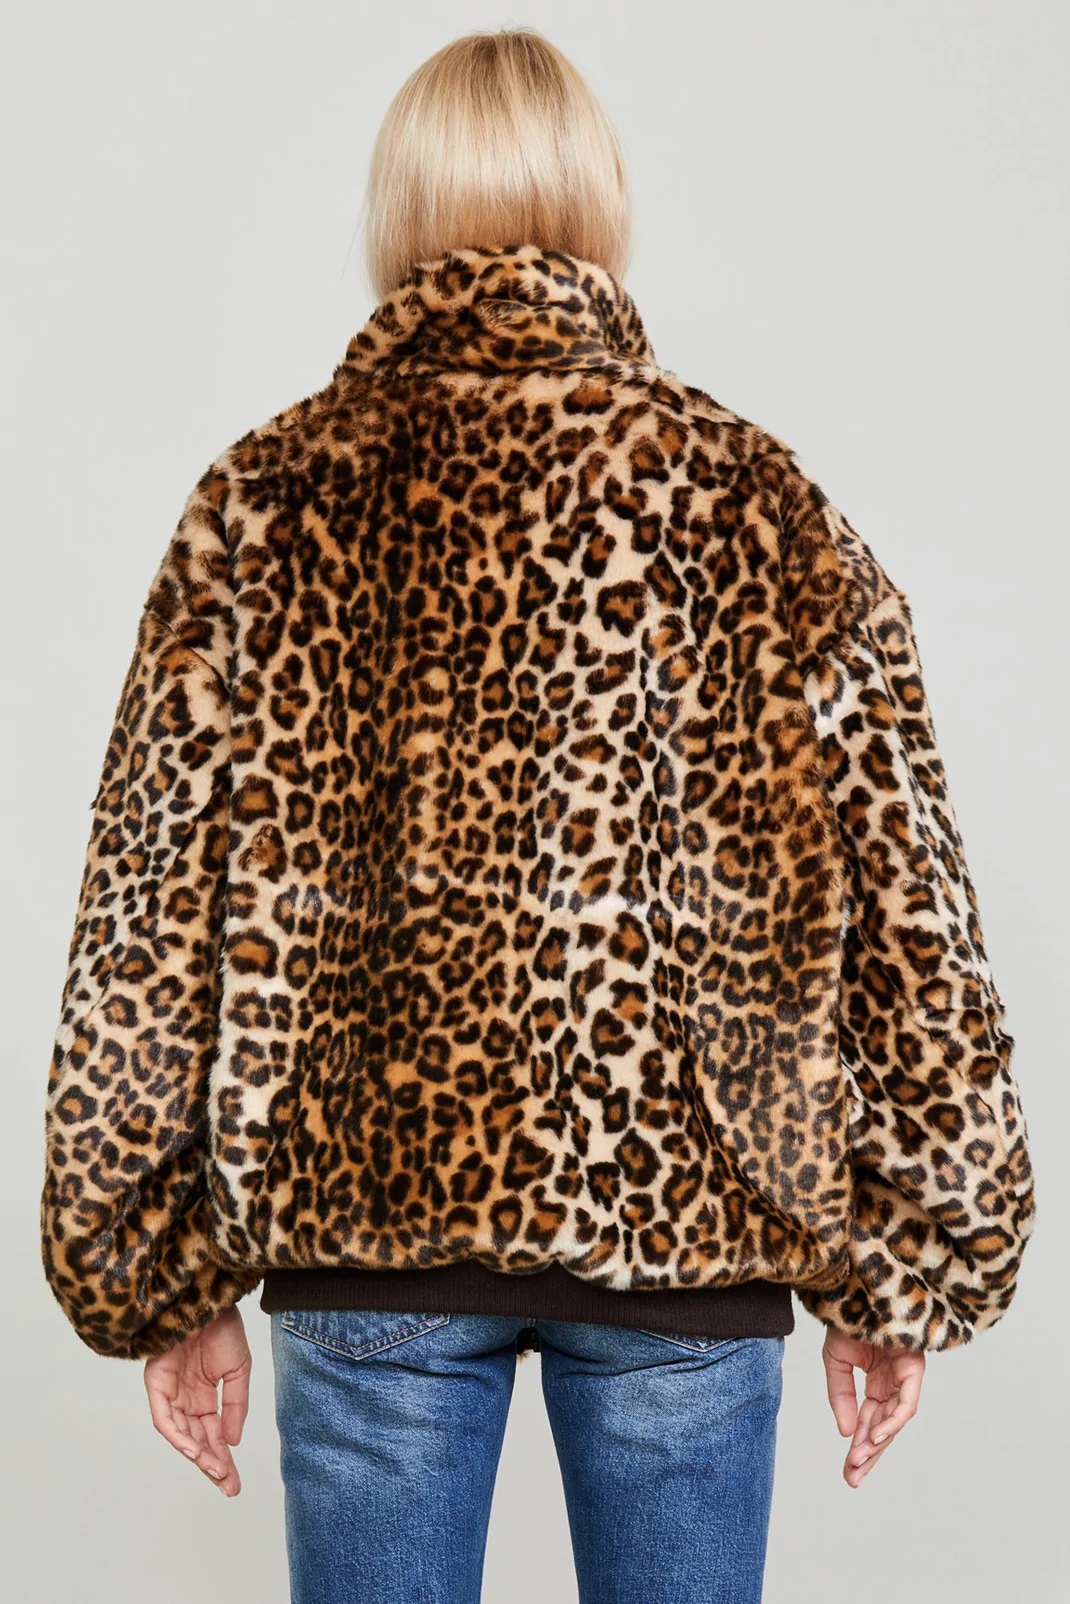 R13 Reversible Zip Up Fake Fur Jacket